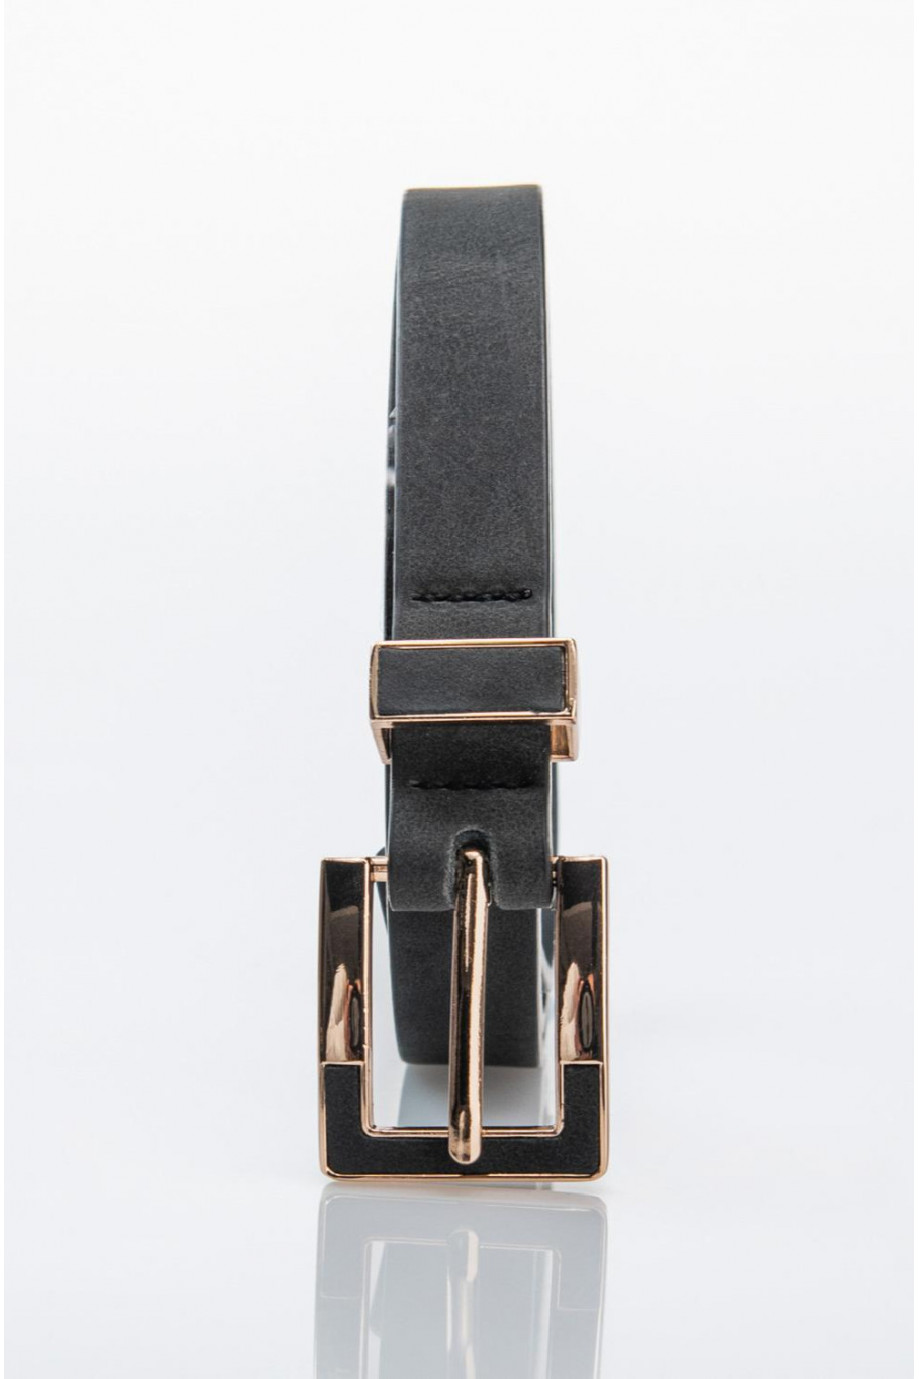 Cinturón negro con hebilla metálica dorada y pasador